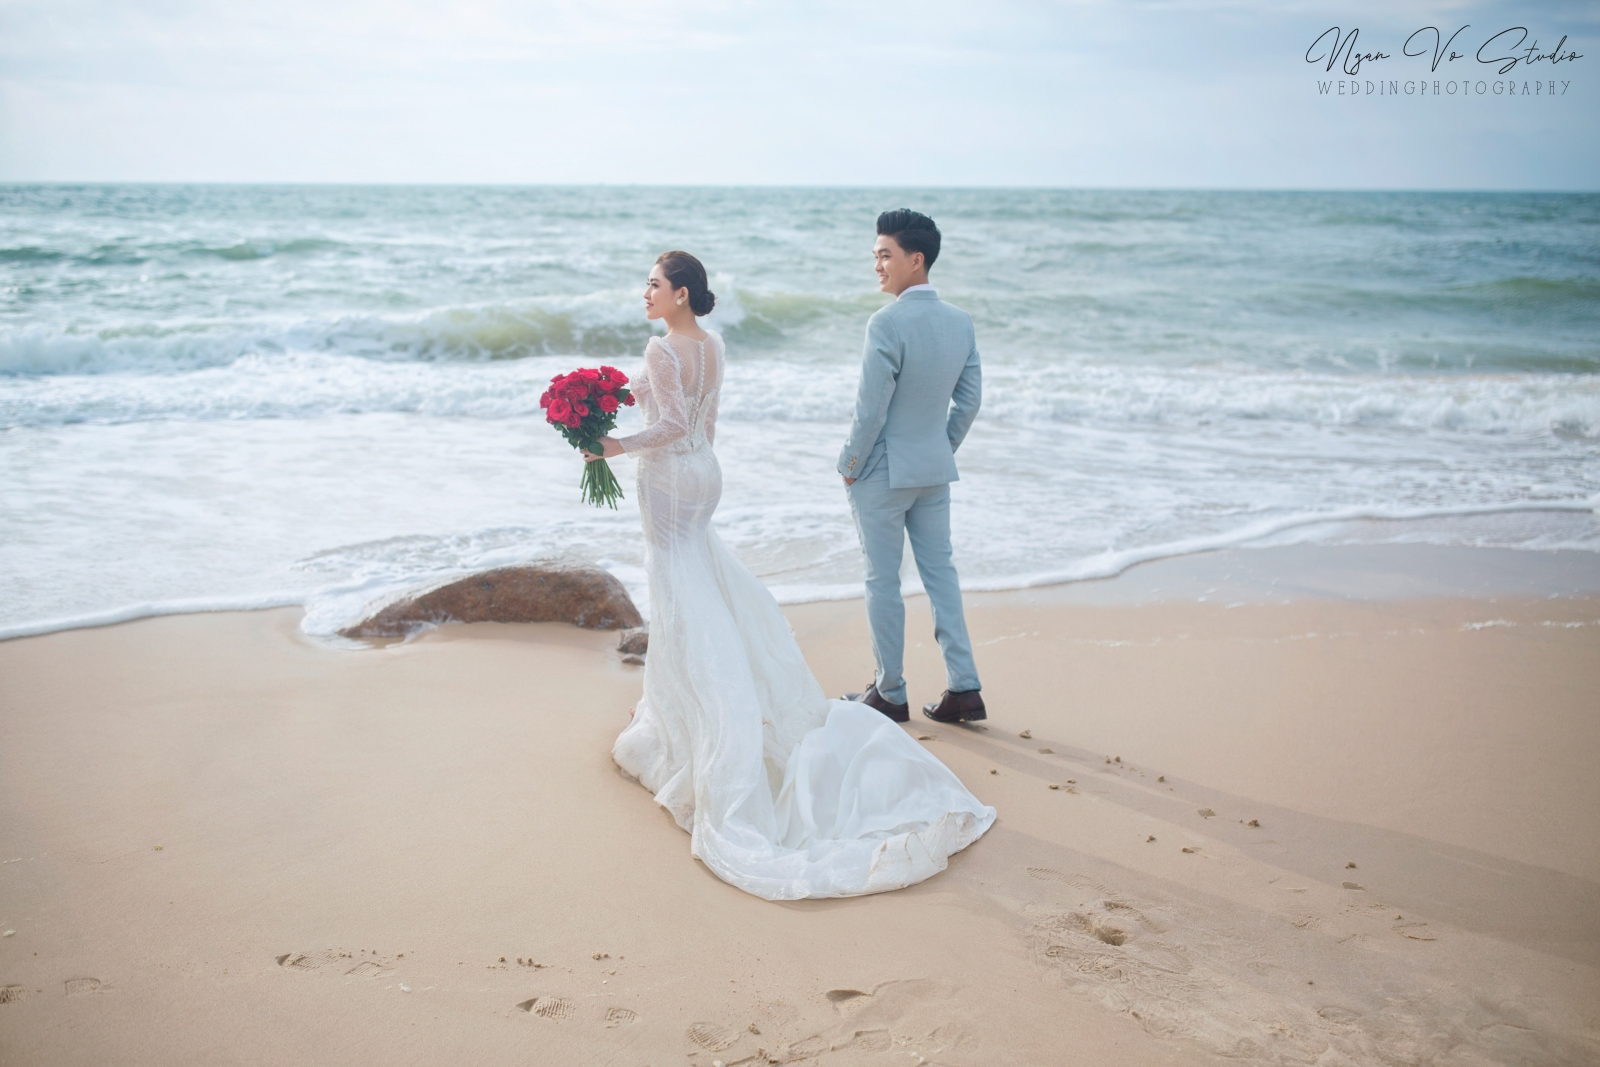 Ảnh cưới Hồ Cốc - Biển 03